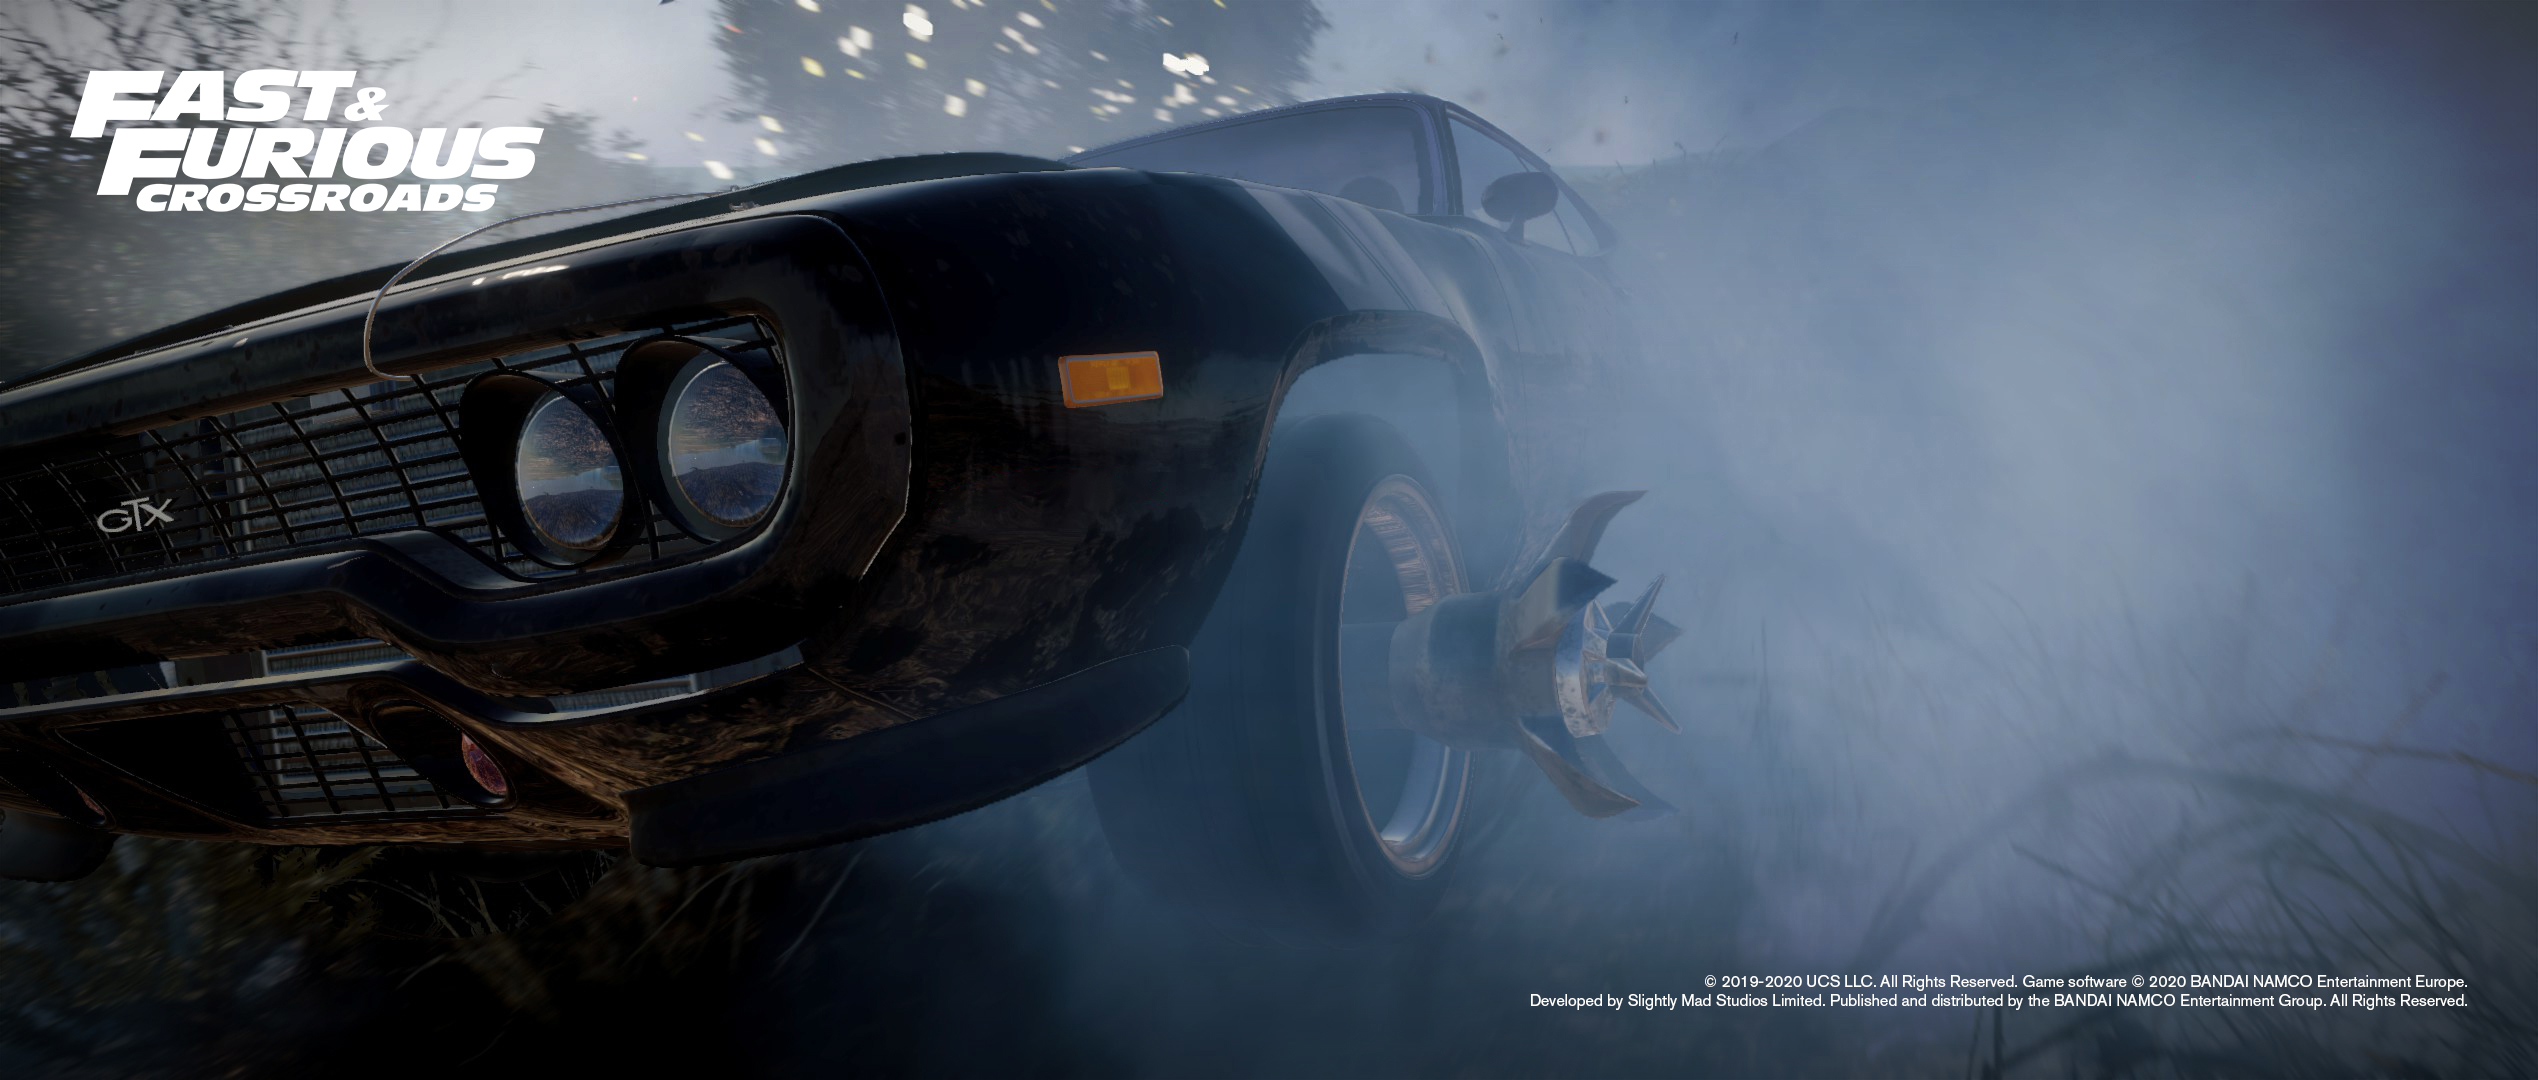 画像集 005 映画 ワイルドスピード を題材としたレースゲーム Fast Furious Crossroads